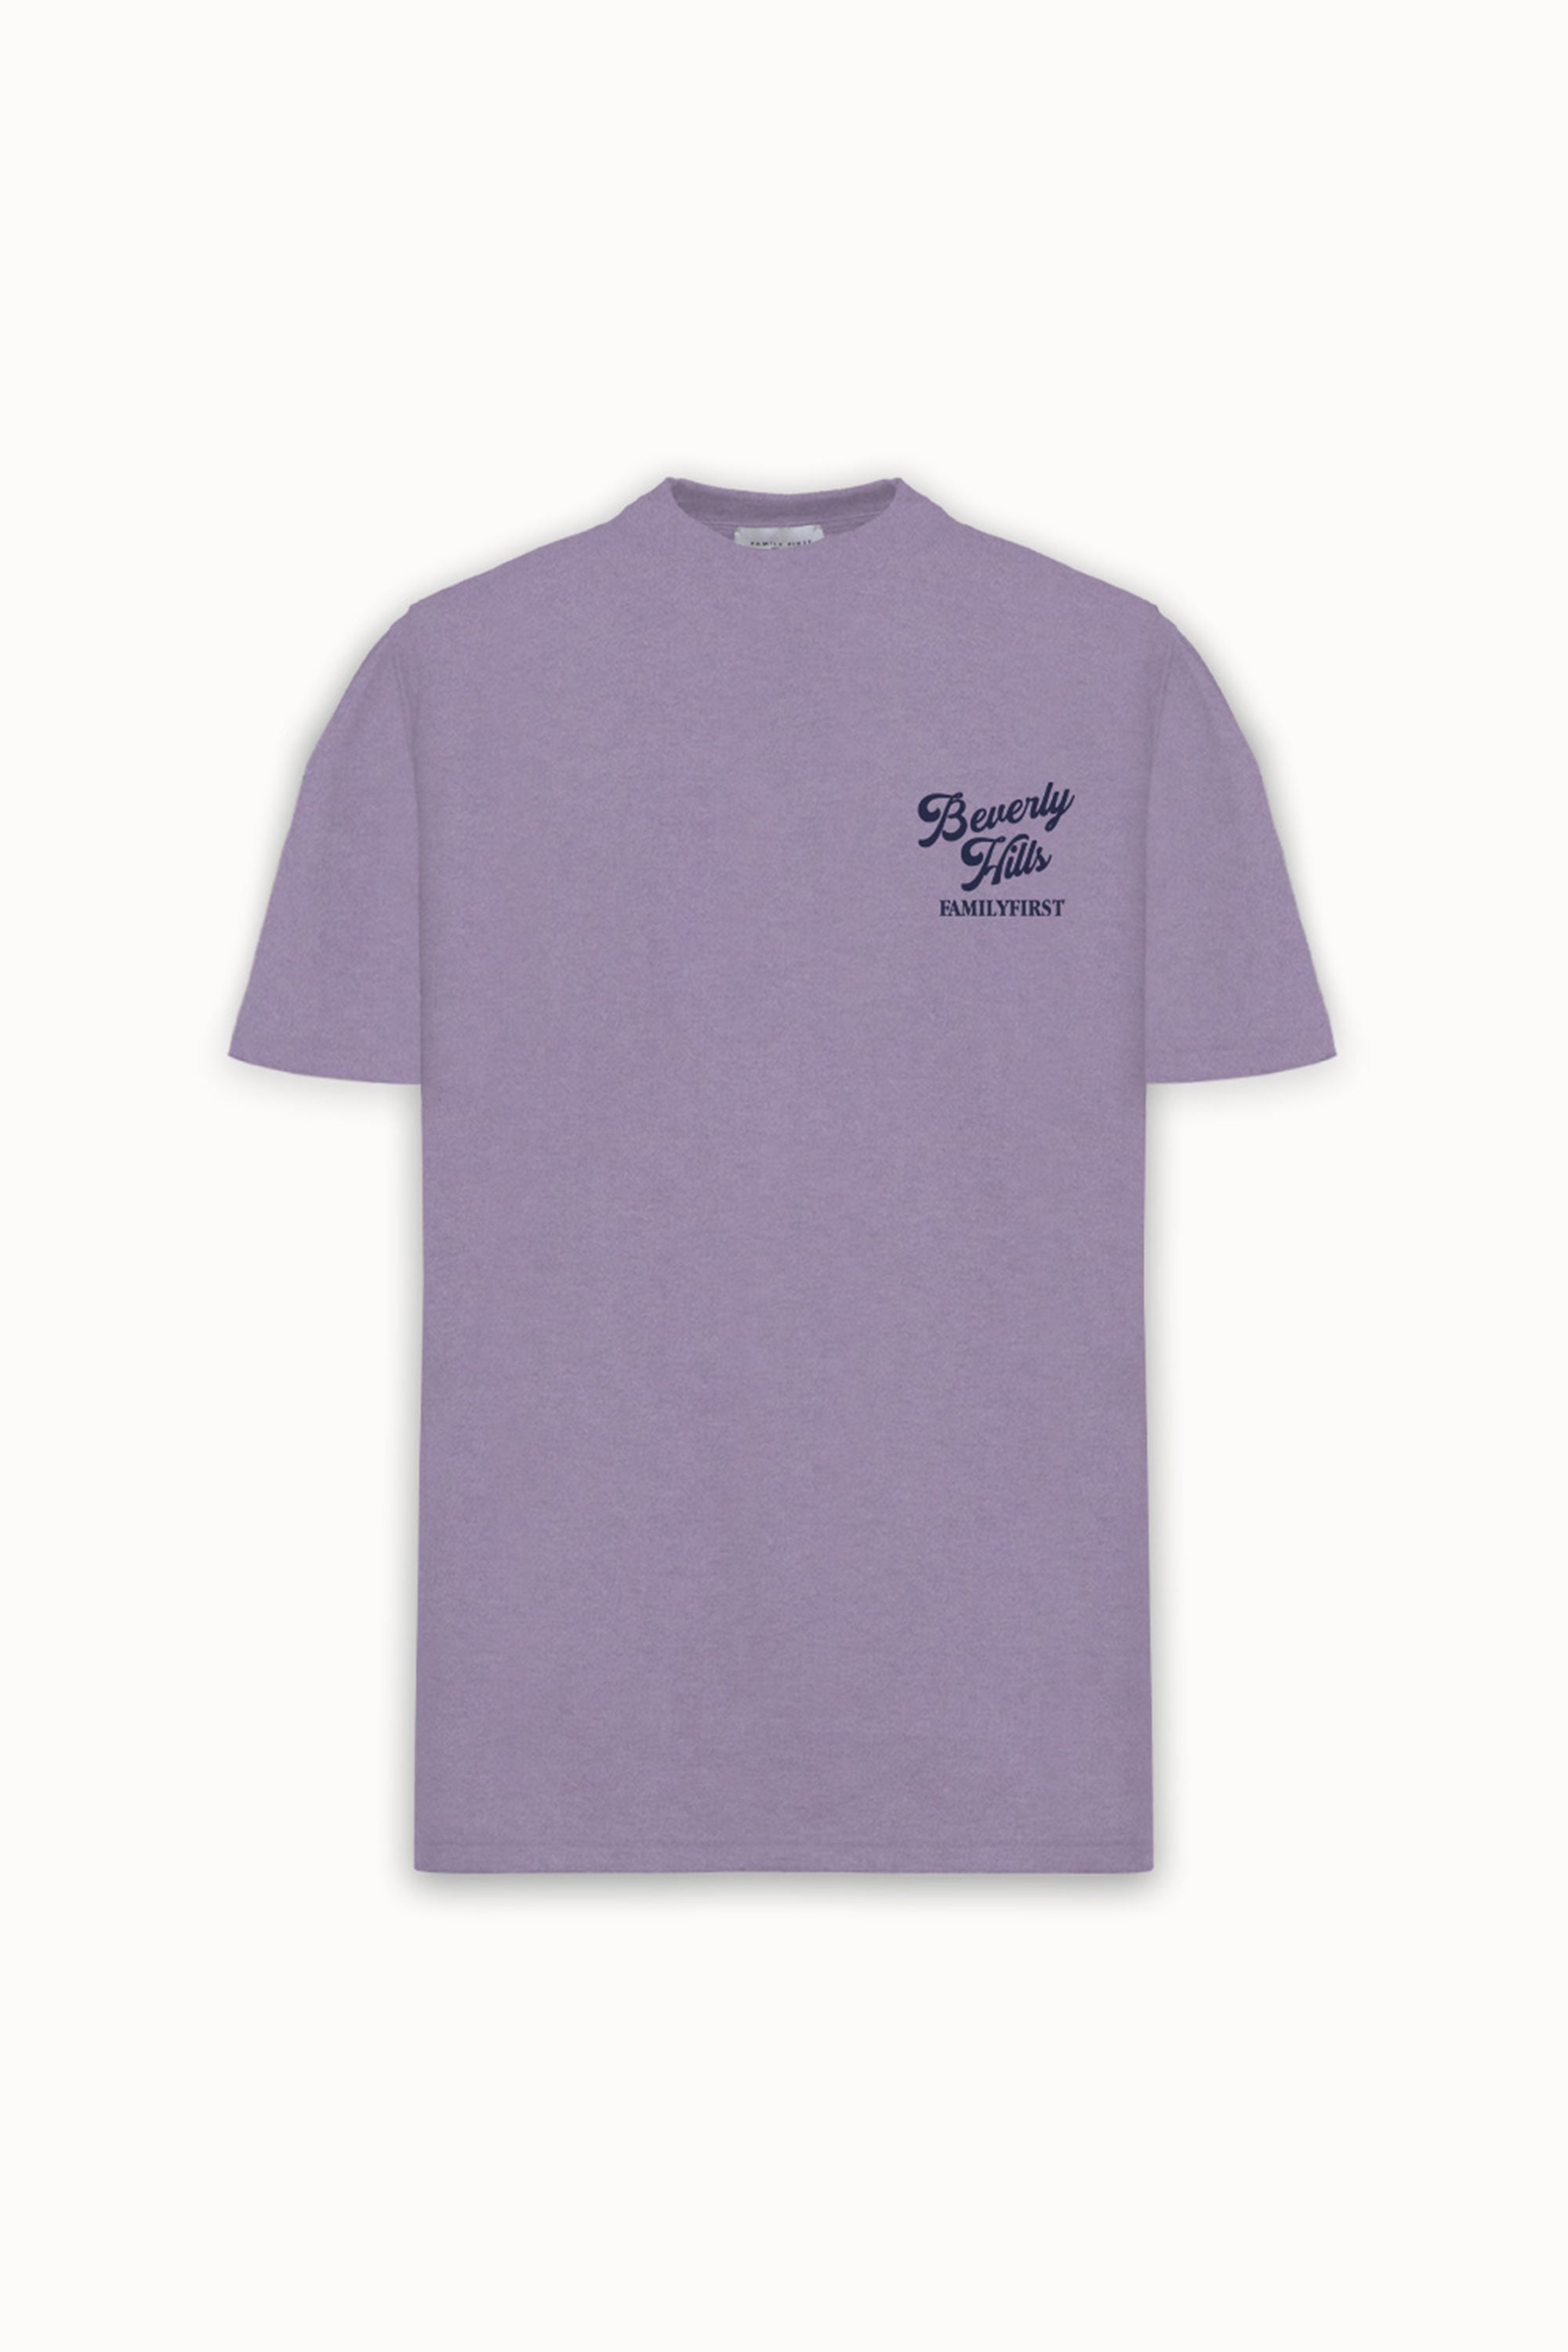 T-Shirt "SS24" Beverly Hills